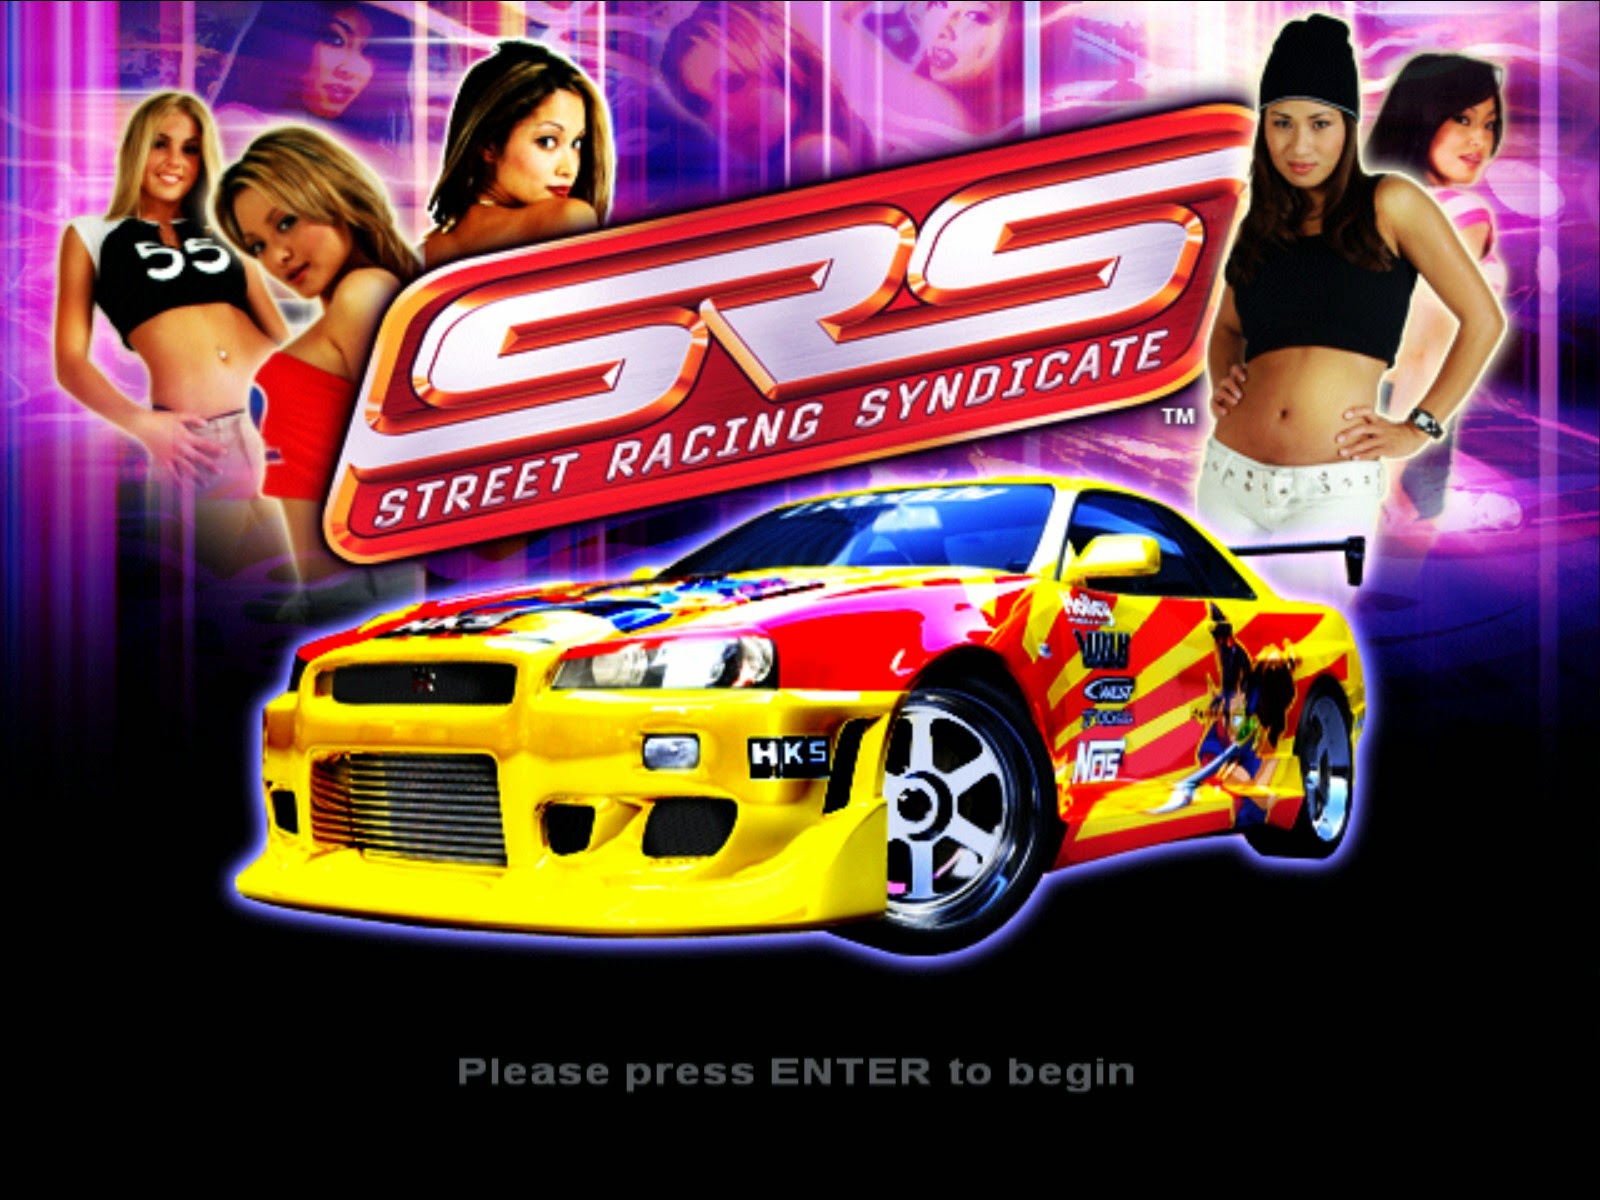 street racing syndicate girls